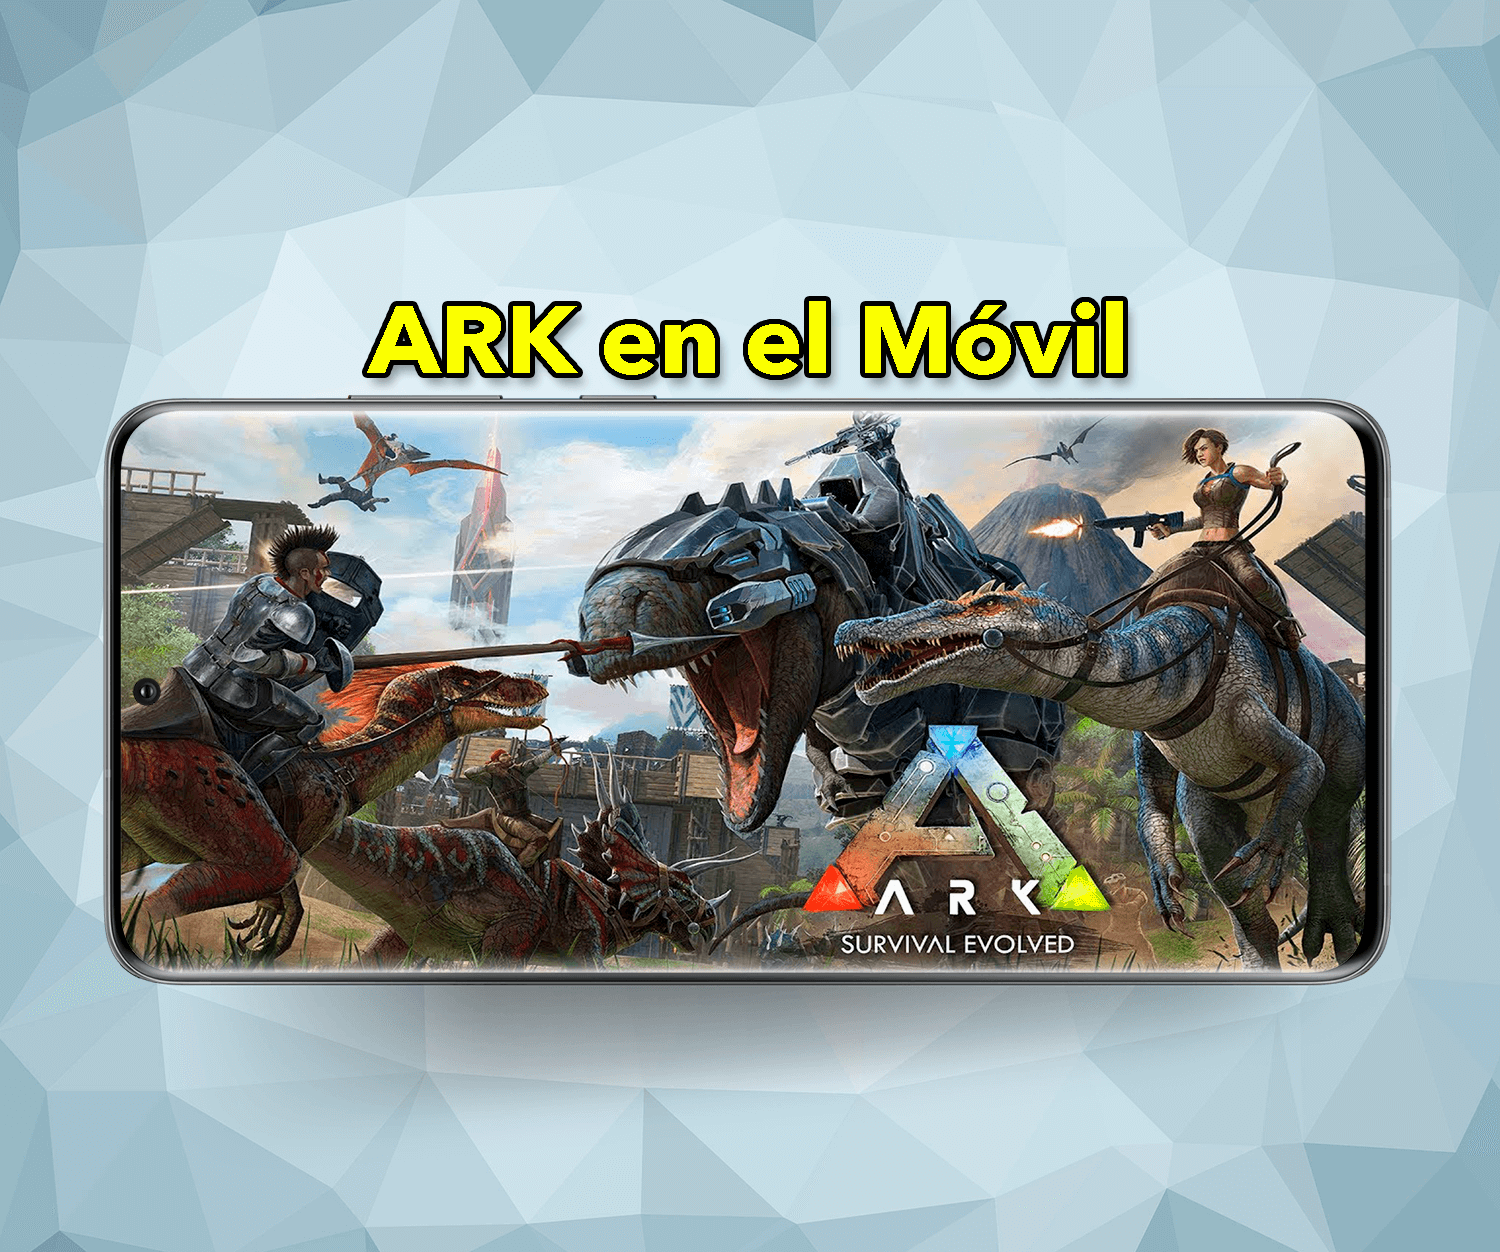 Cómo jugar ARK en el móvil gratis y crear partidas con amigos